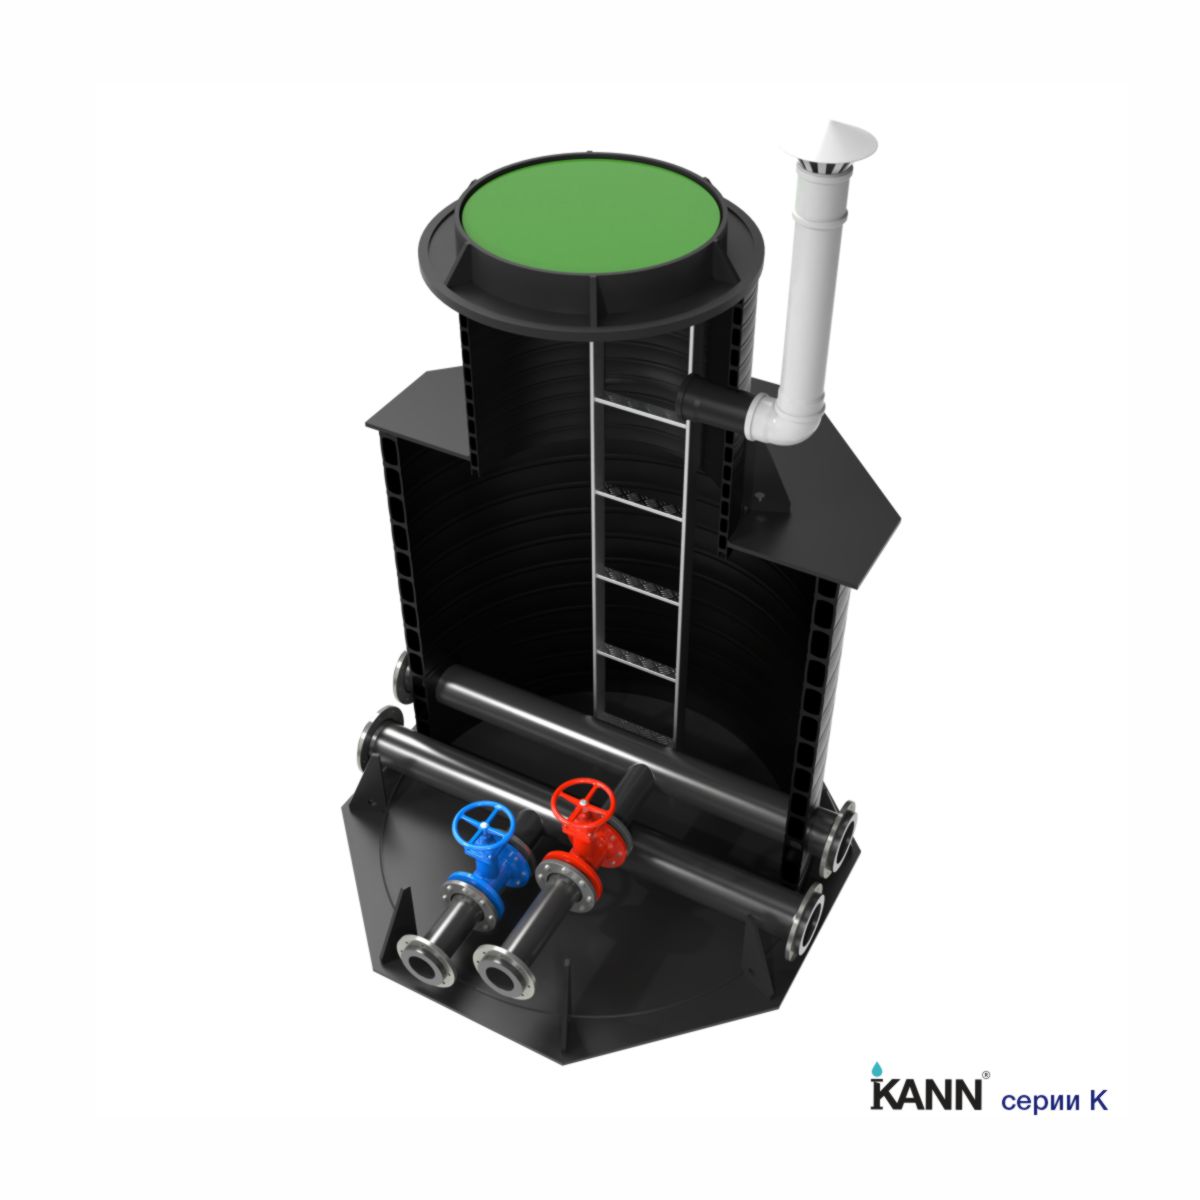 Колодец для водоснабжения KANN серии K